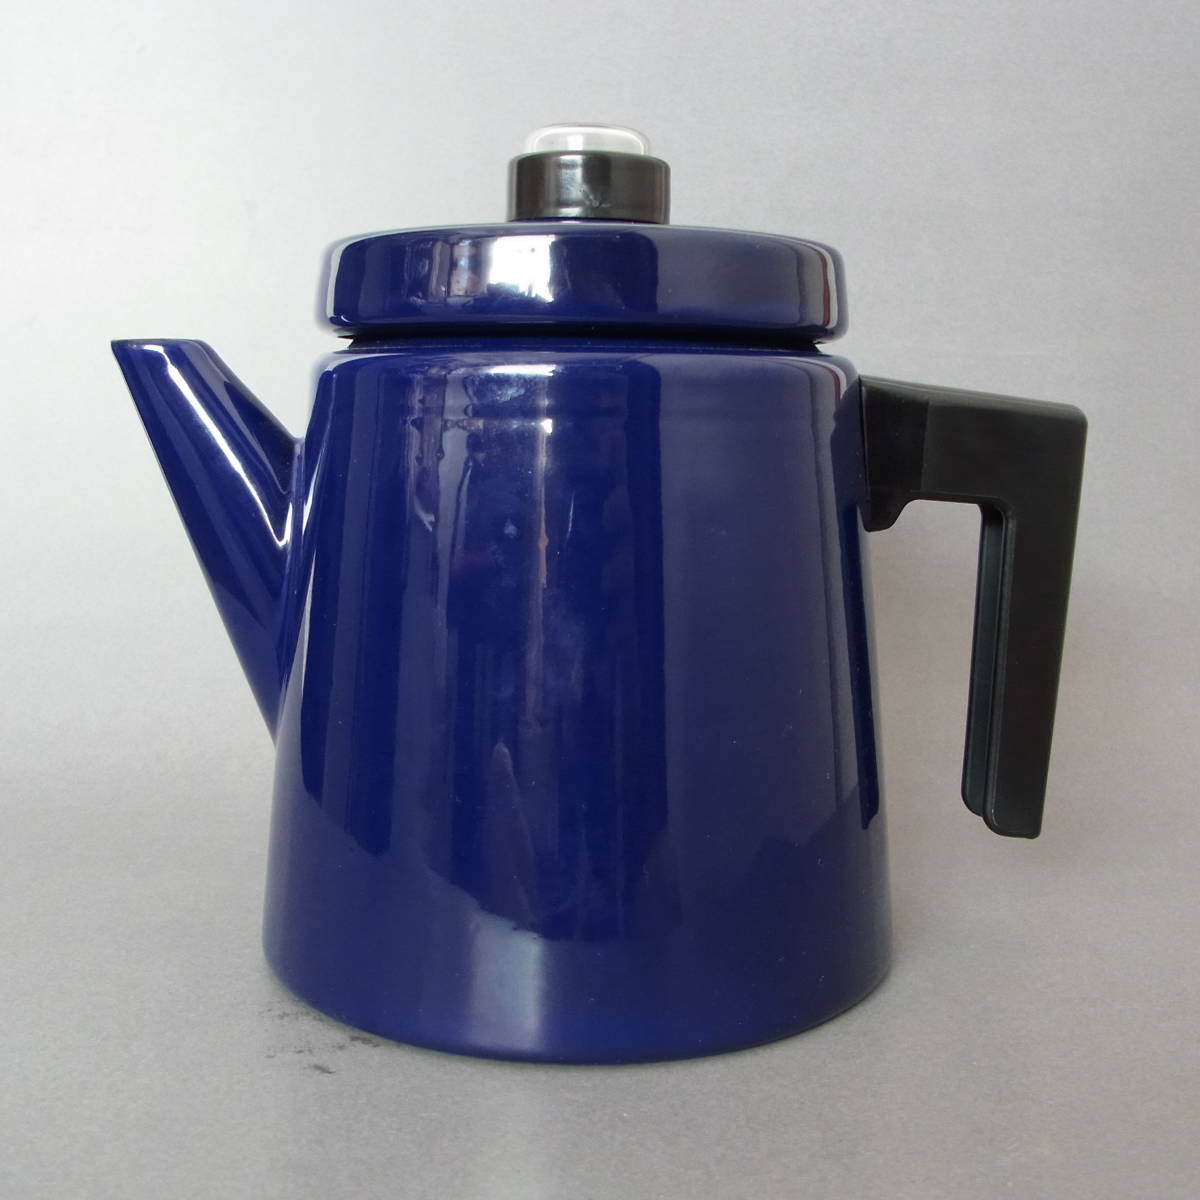 新品未使用 復刻モデル / Vuokko Antti Nurmesniemi Enamel Pot / Blue 1.5L / Made in Finland Finel Arabia Ittala ホーロー 北欧 _画像4